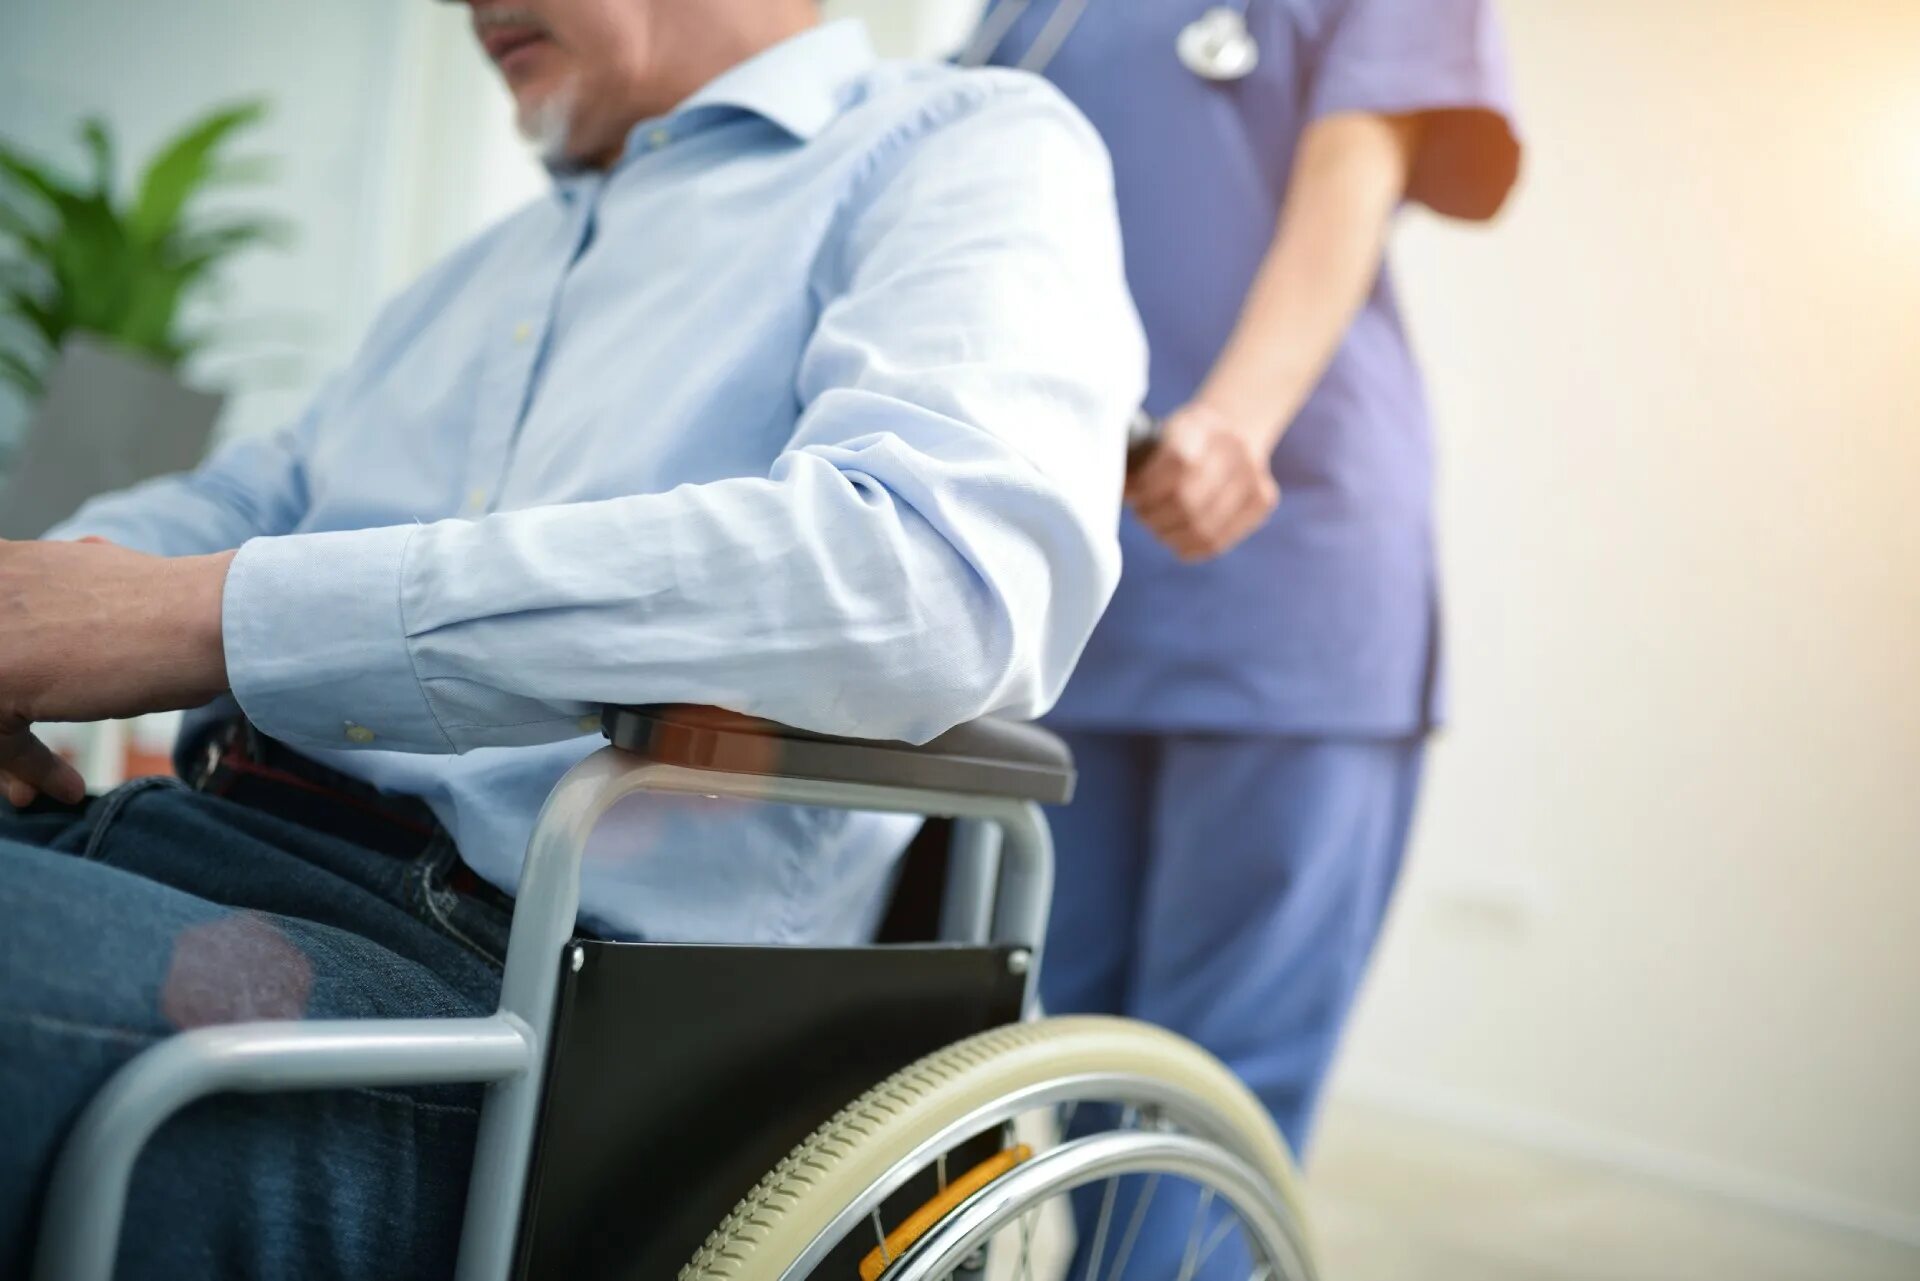 Реабилитация группы инвалидности